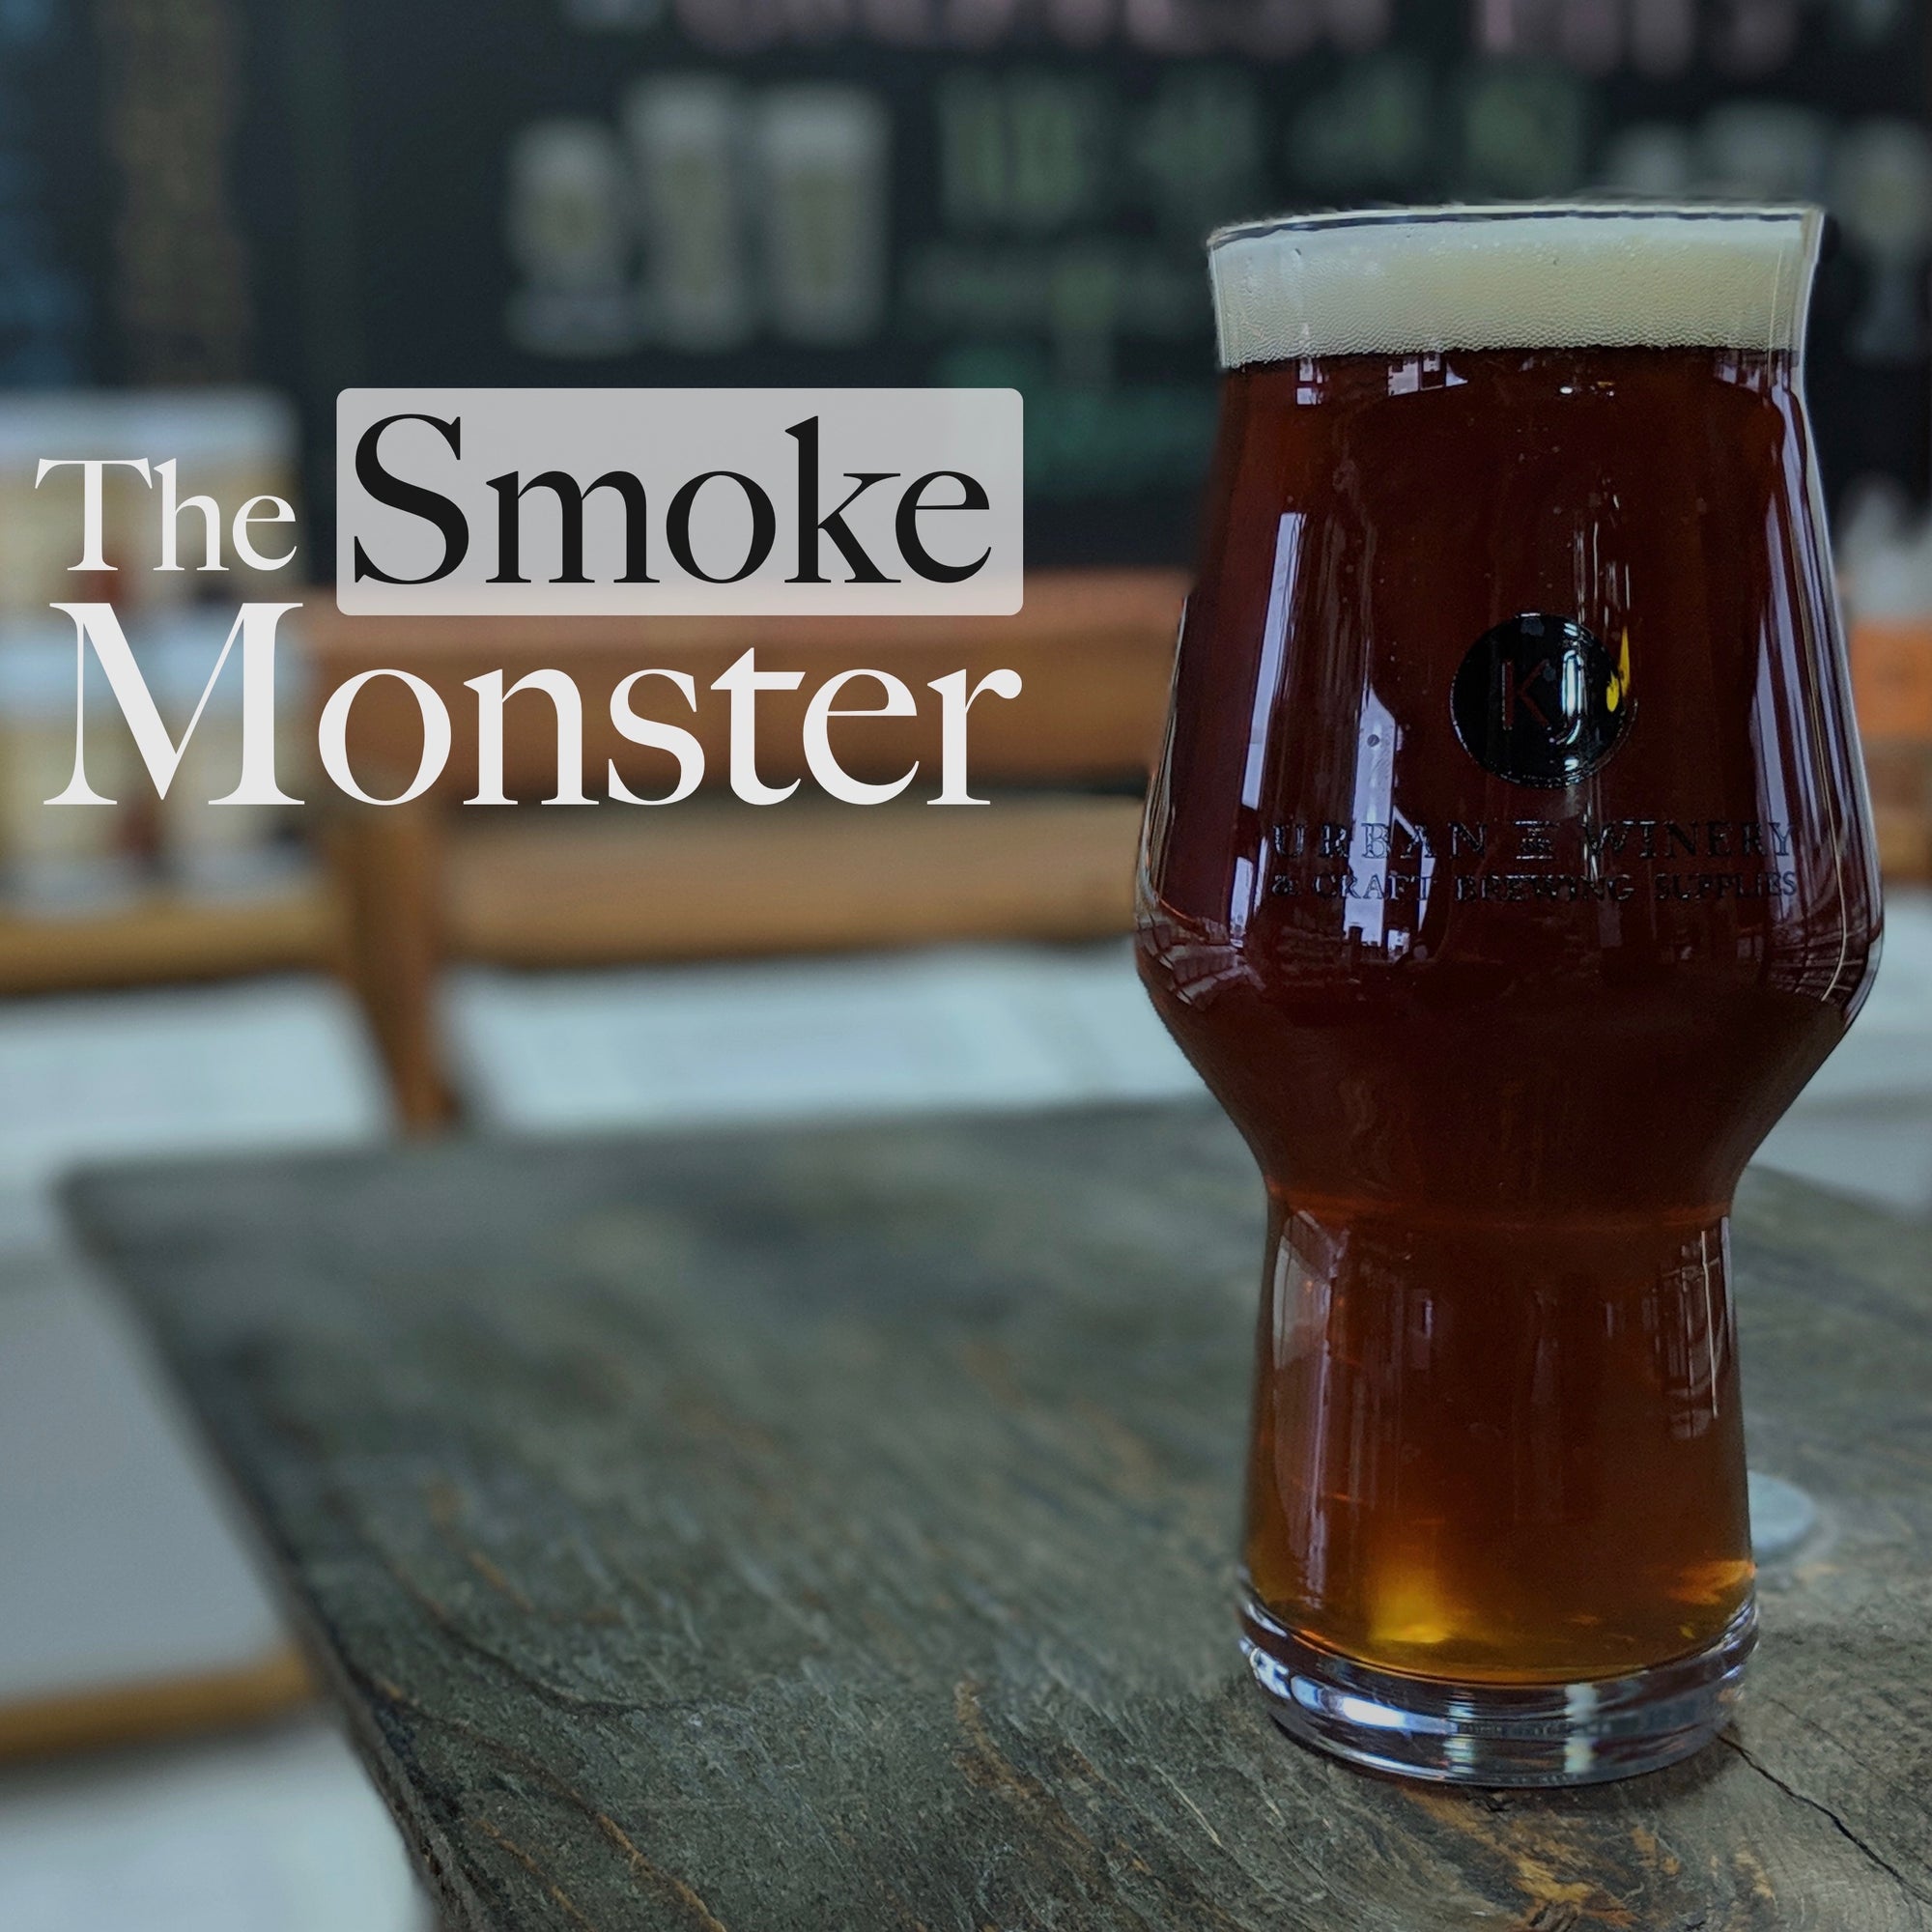 The Smoke Monster